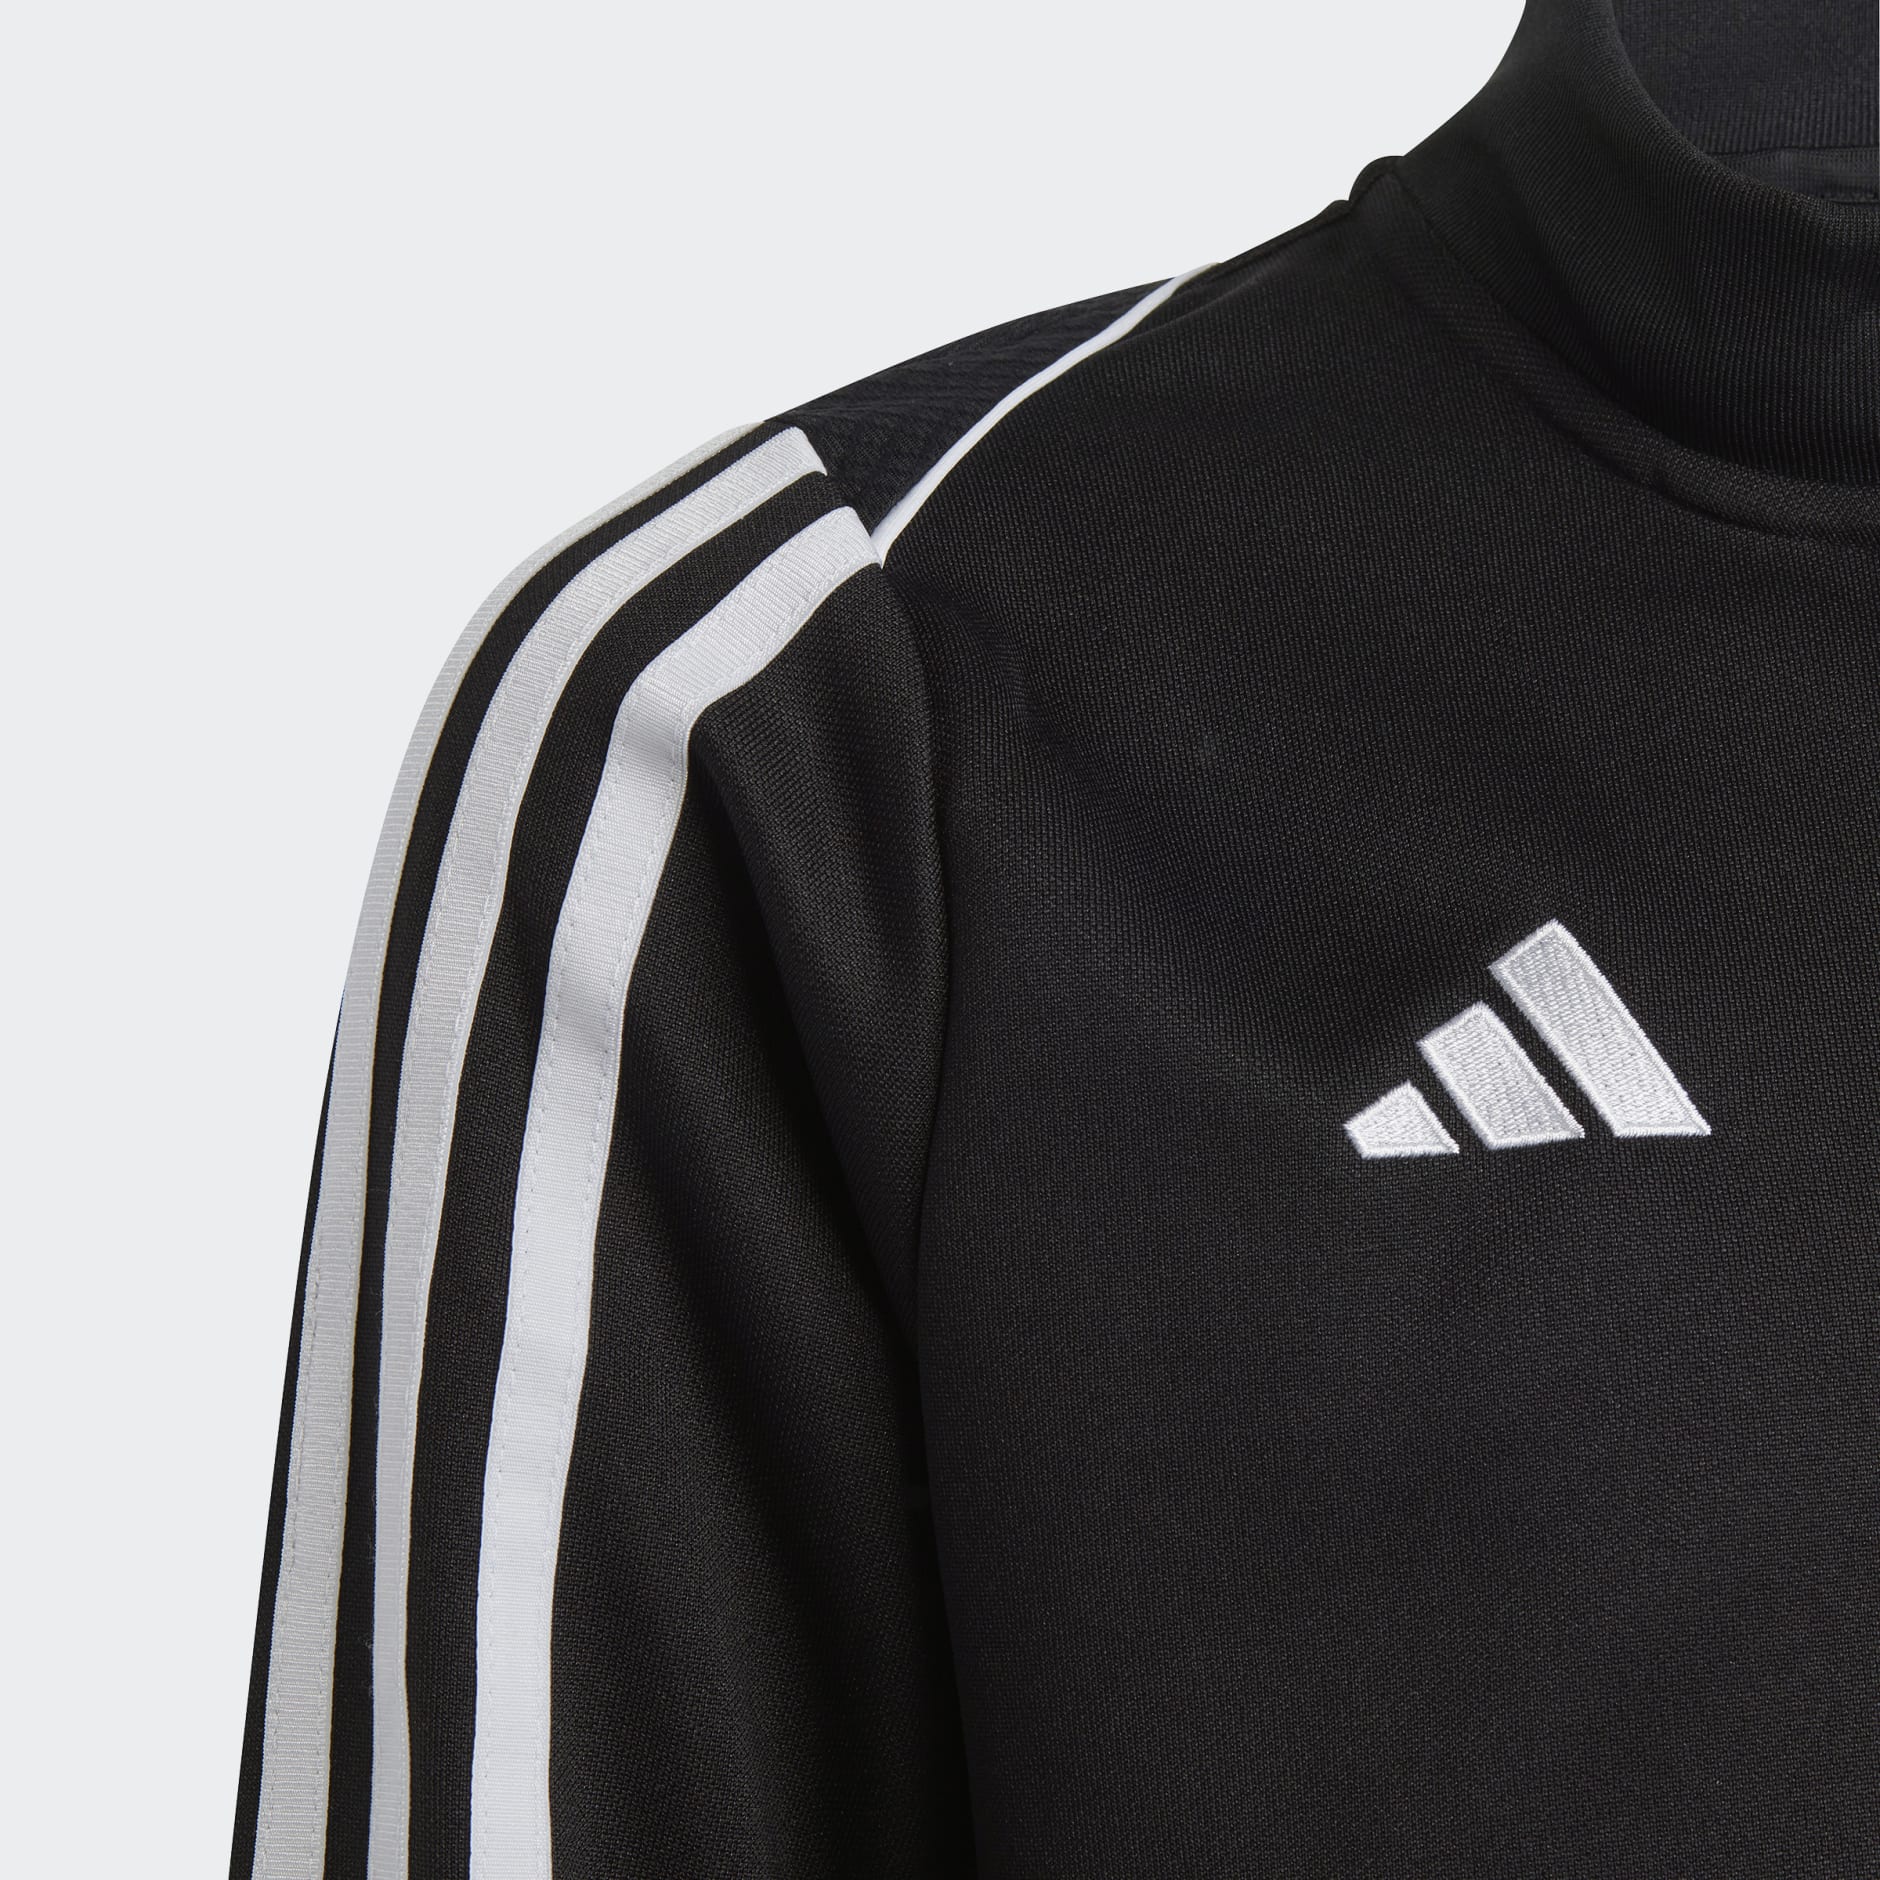 Clothing - Tiro 23 League Training Jacket - Black | adidas South Africa